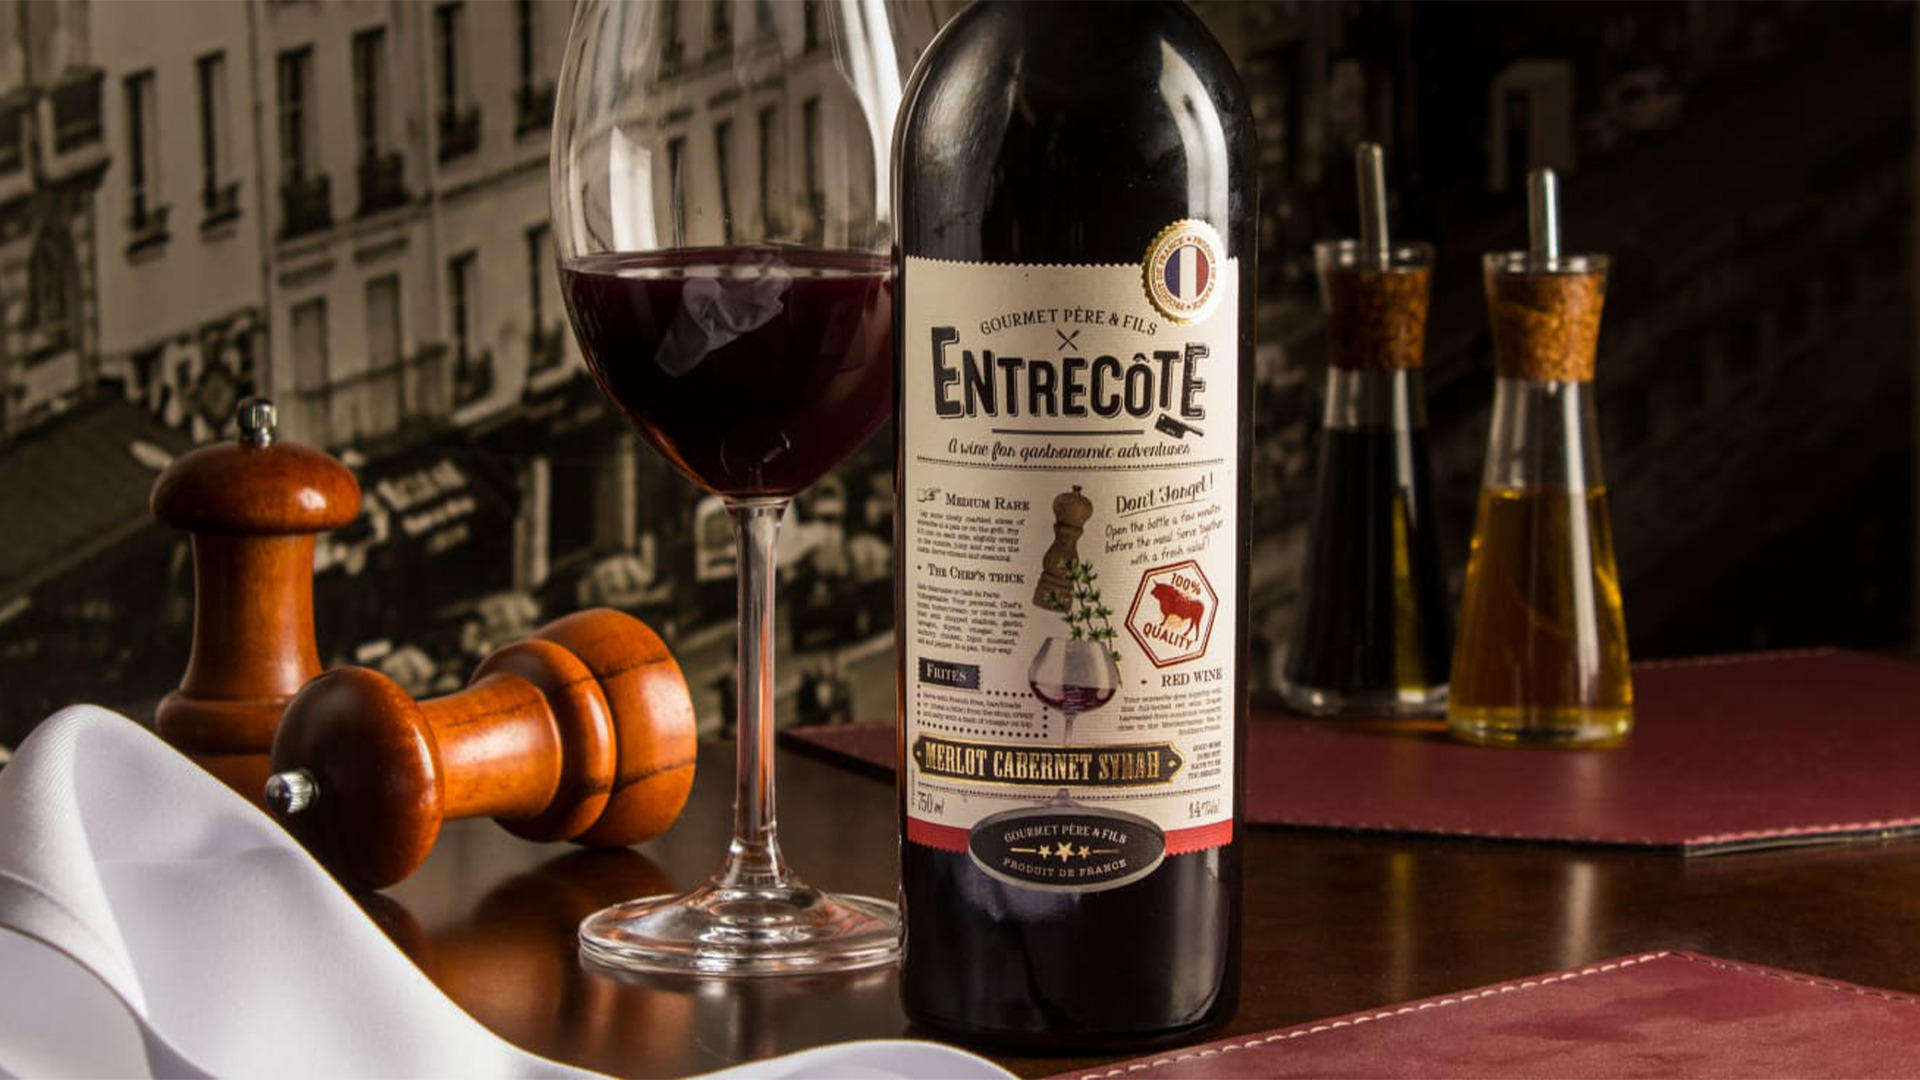 Rượu Vang Pháp Entrecote Merlot Cabernet Sauvignon 1,5L